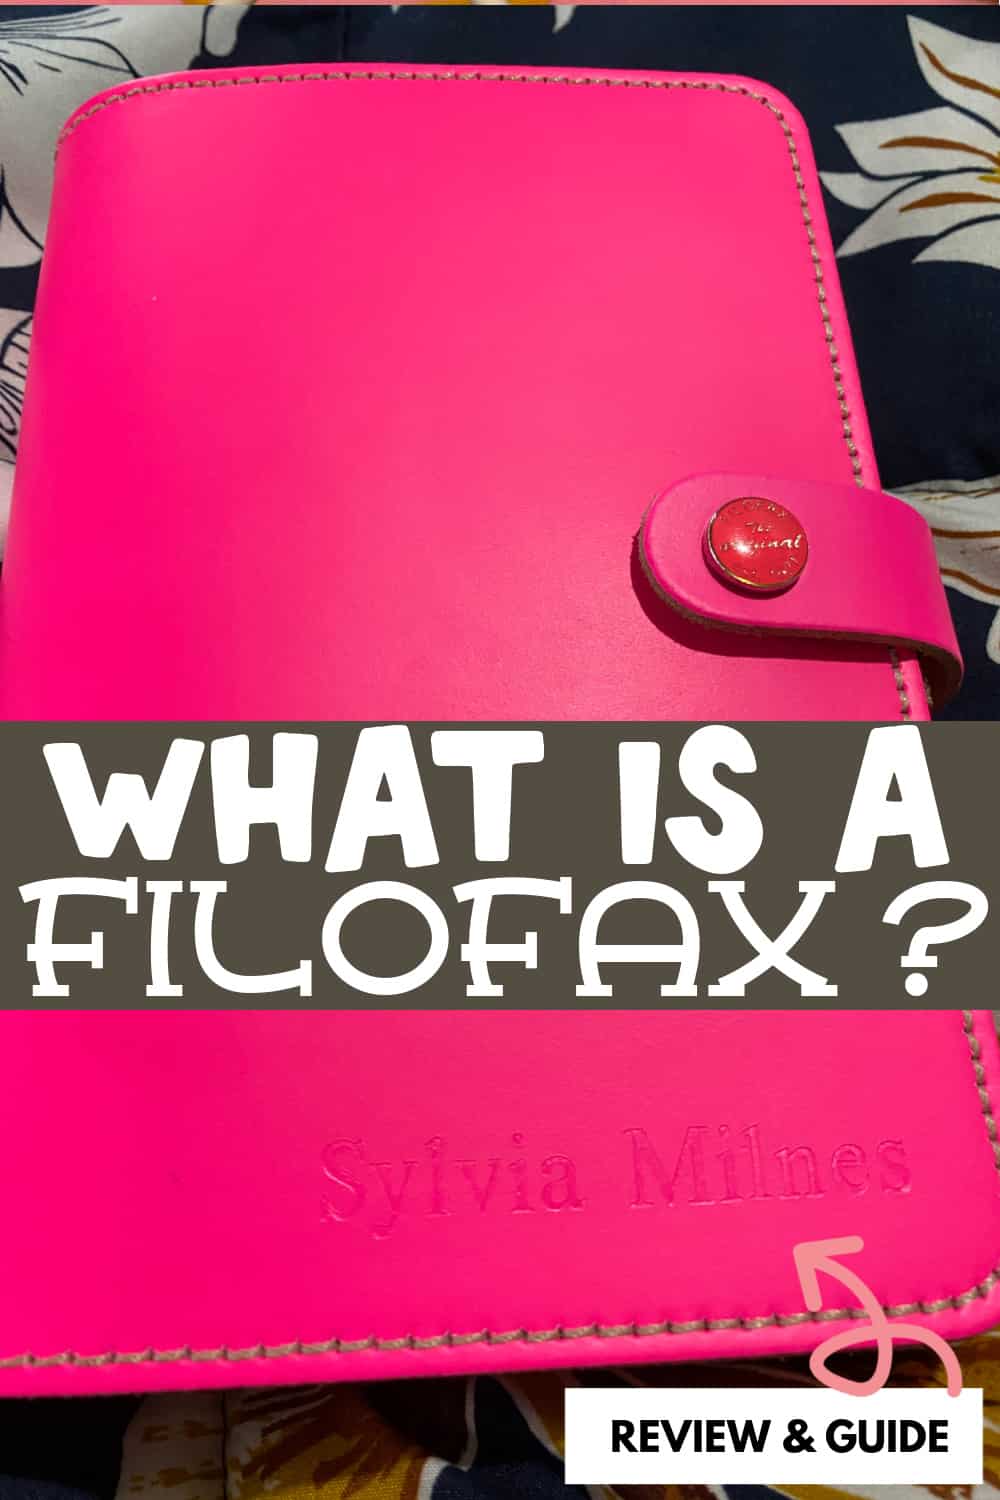 The Original A5 Organizer Filofax  Filofax, Filofax organization, Filofax  planners